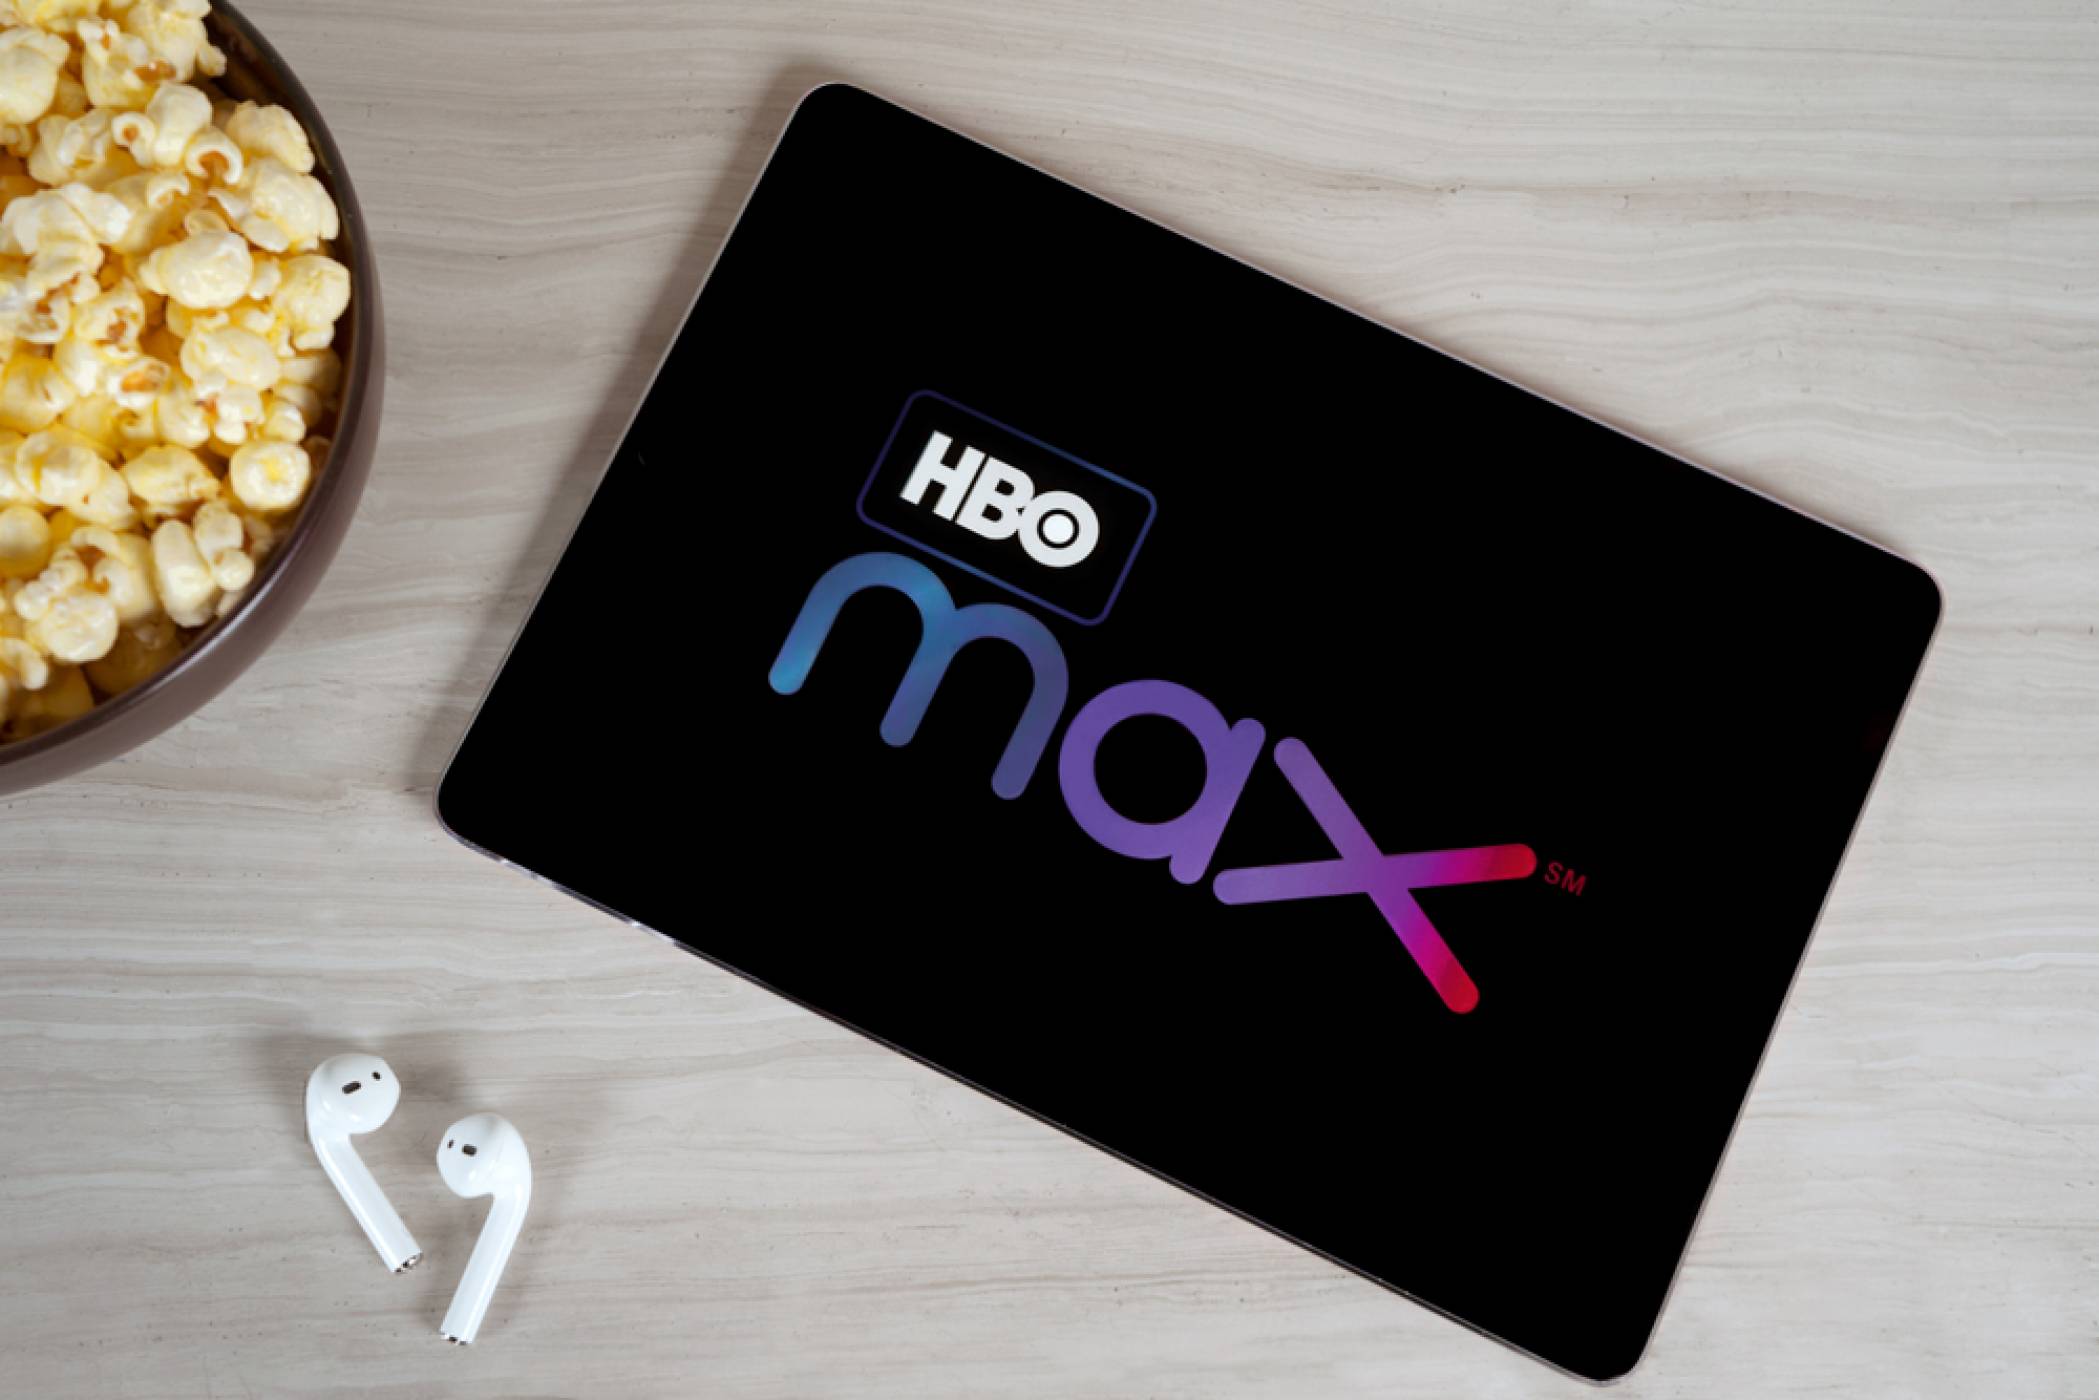 2021 ще е годината на HBO Max – Dune и Matrix 4 са вече официално в списъка (ВИДЕО)